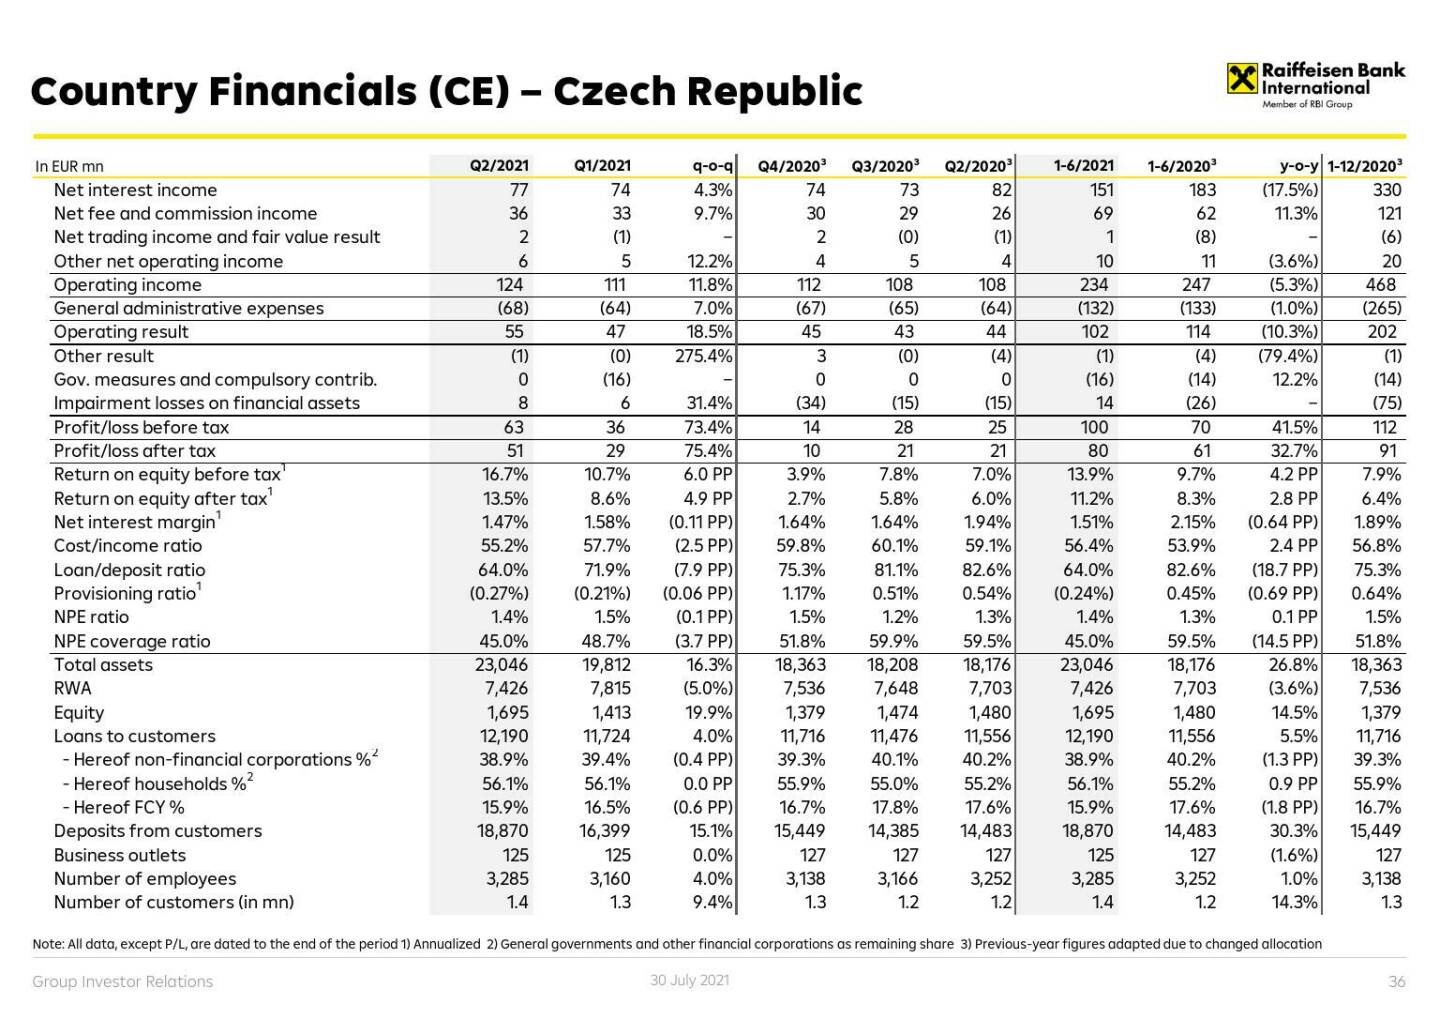 RBI - Country financials (CE) - Czech Republic